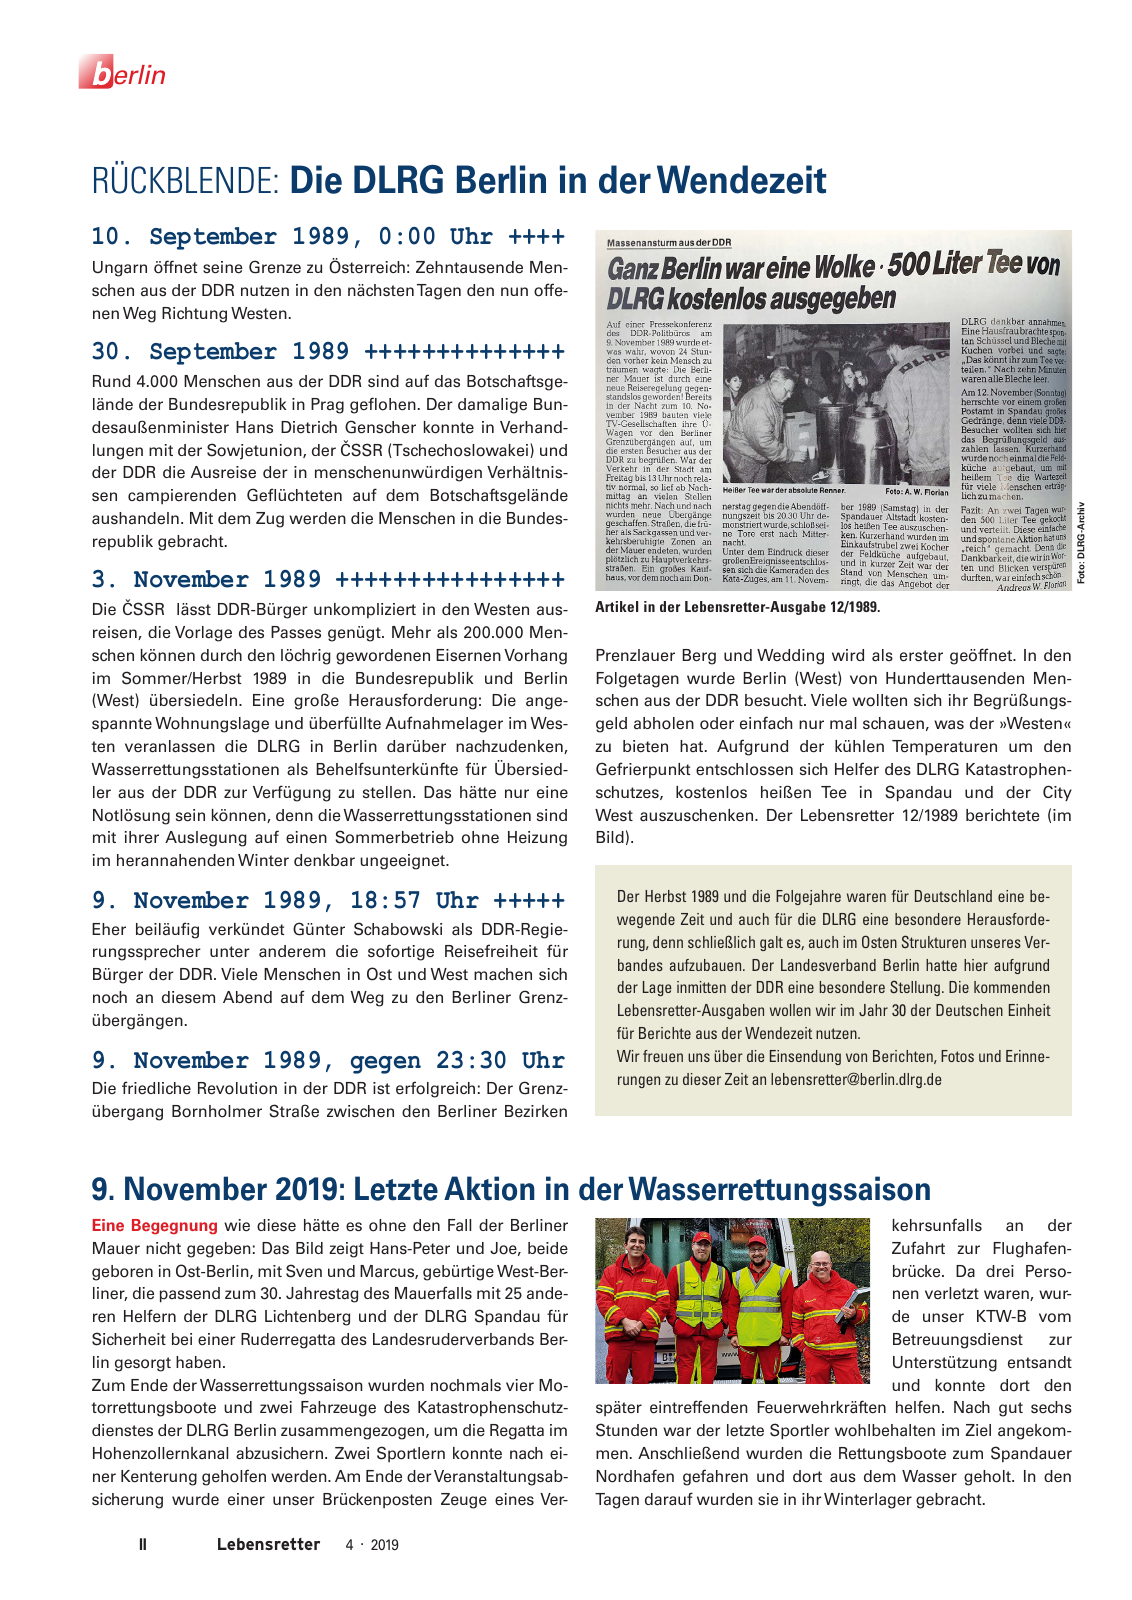 Vorschau Lebensretter 4/2019 -  Berlin Regionalausgabe Seite 4